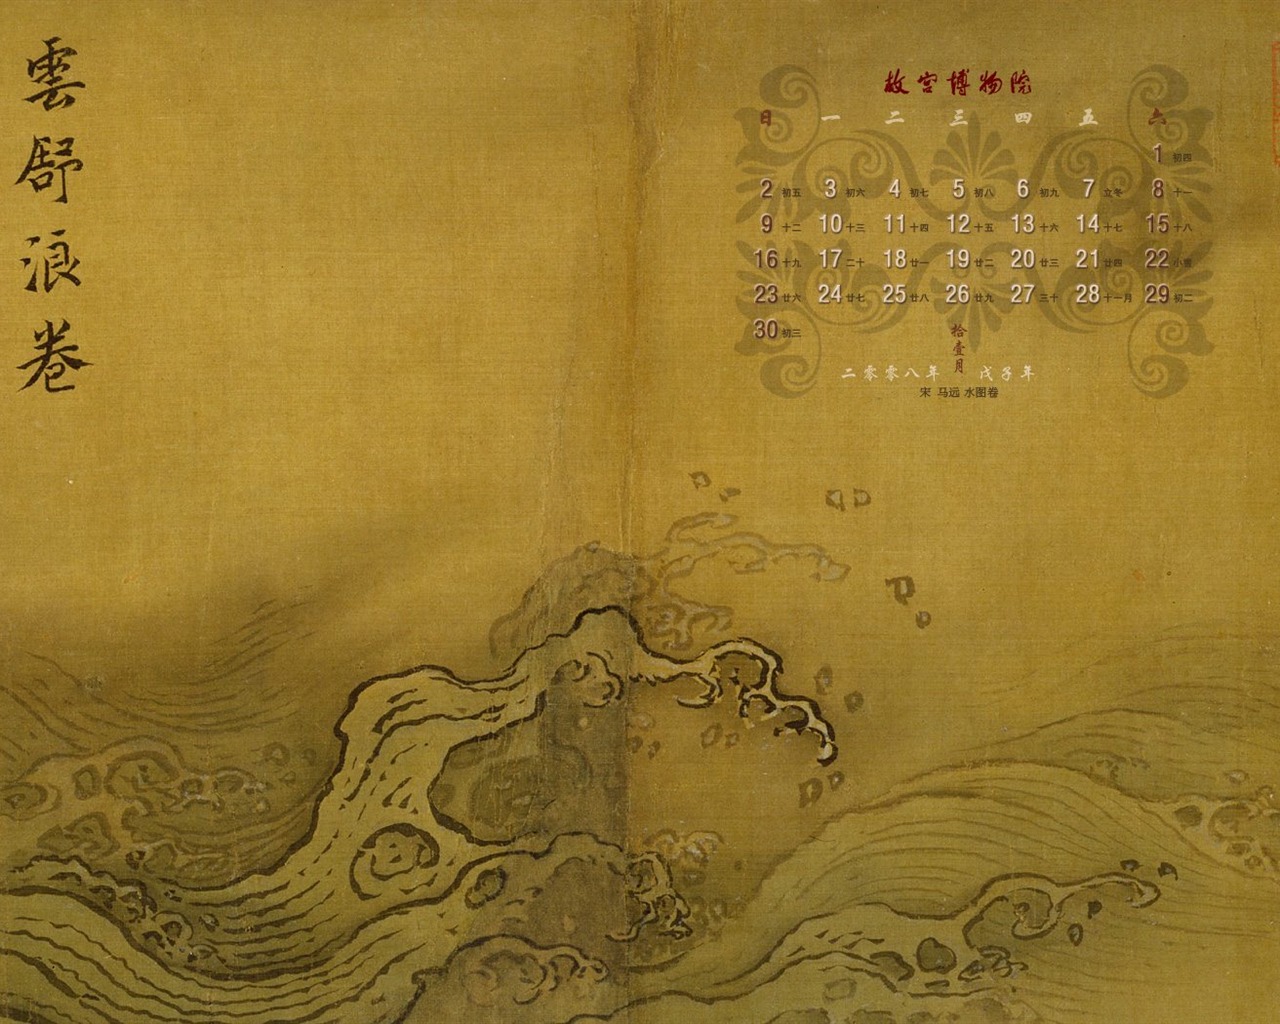 北京故宫博物院 文物展壁纸(二)21 - 1280x1024